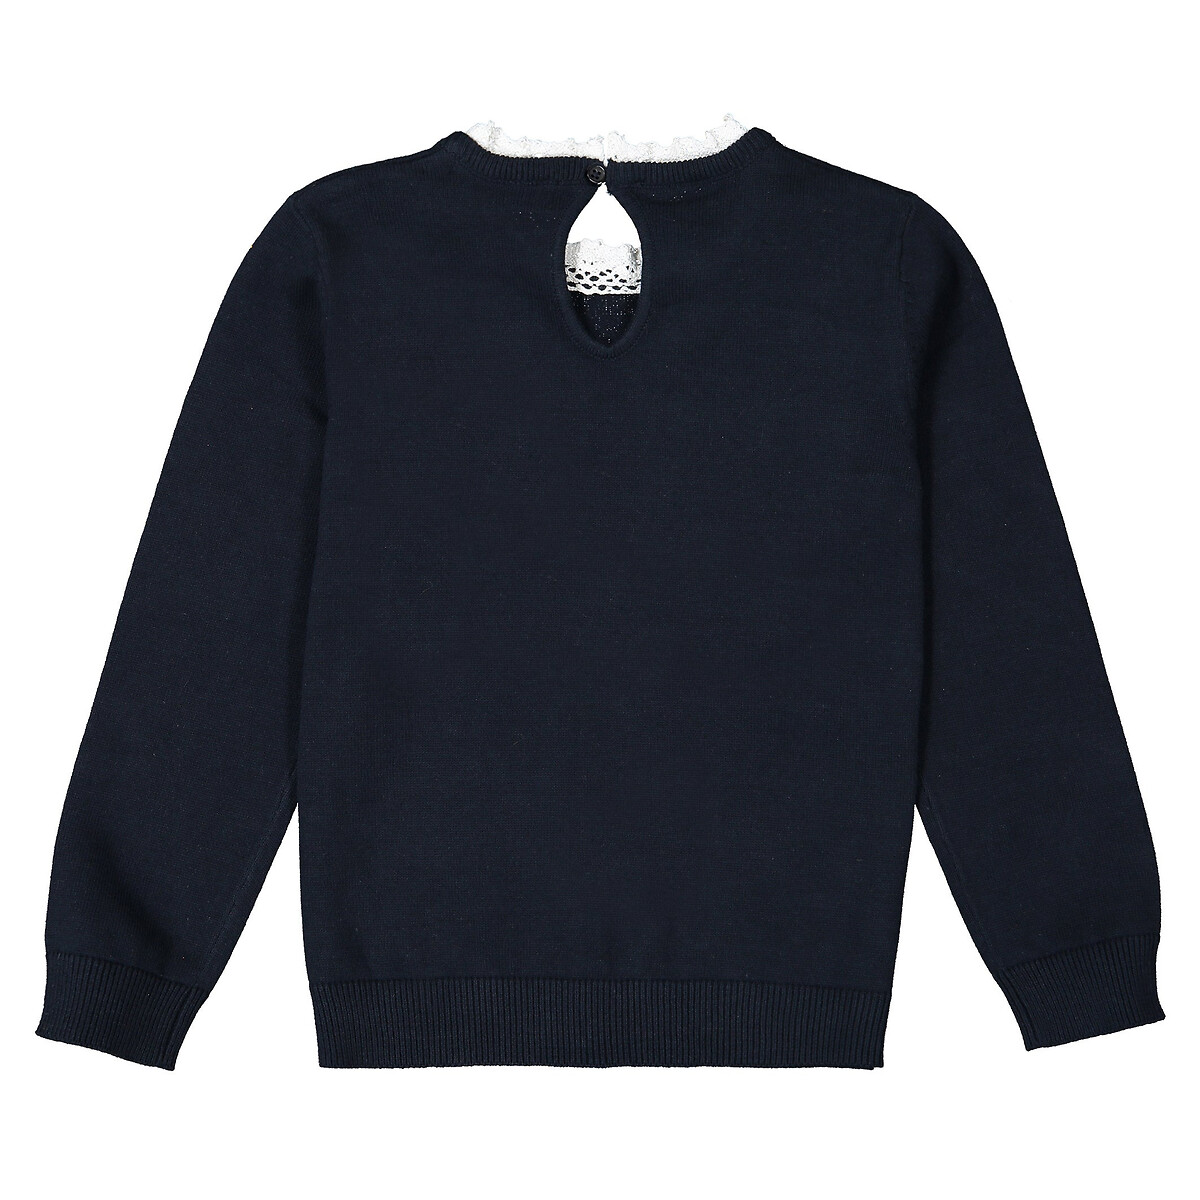 Пуловер La Redoute С эффектом  в  воротник связан крючком  8 лет - 126 см синий, размер 8 лет - 126 см - фото 3